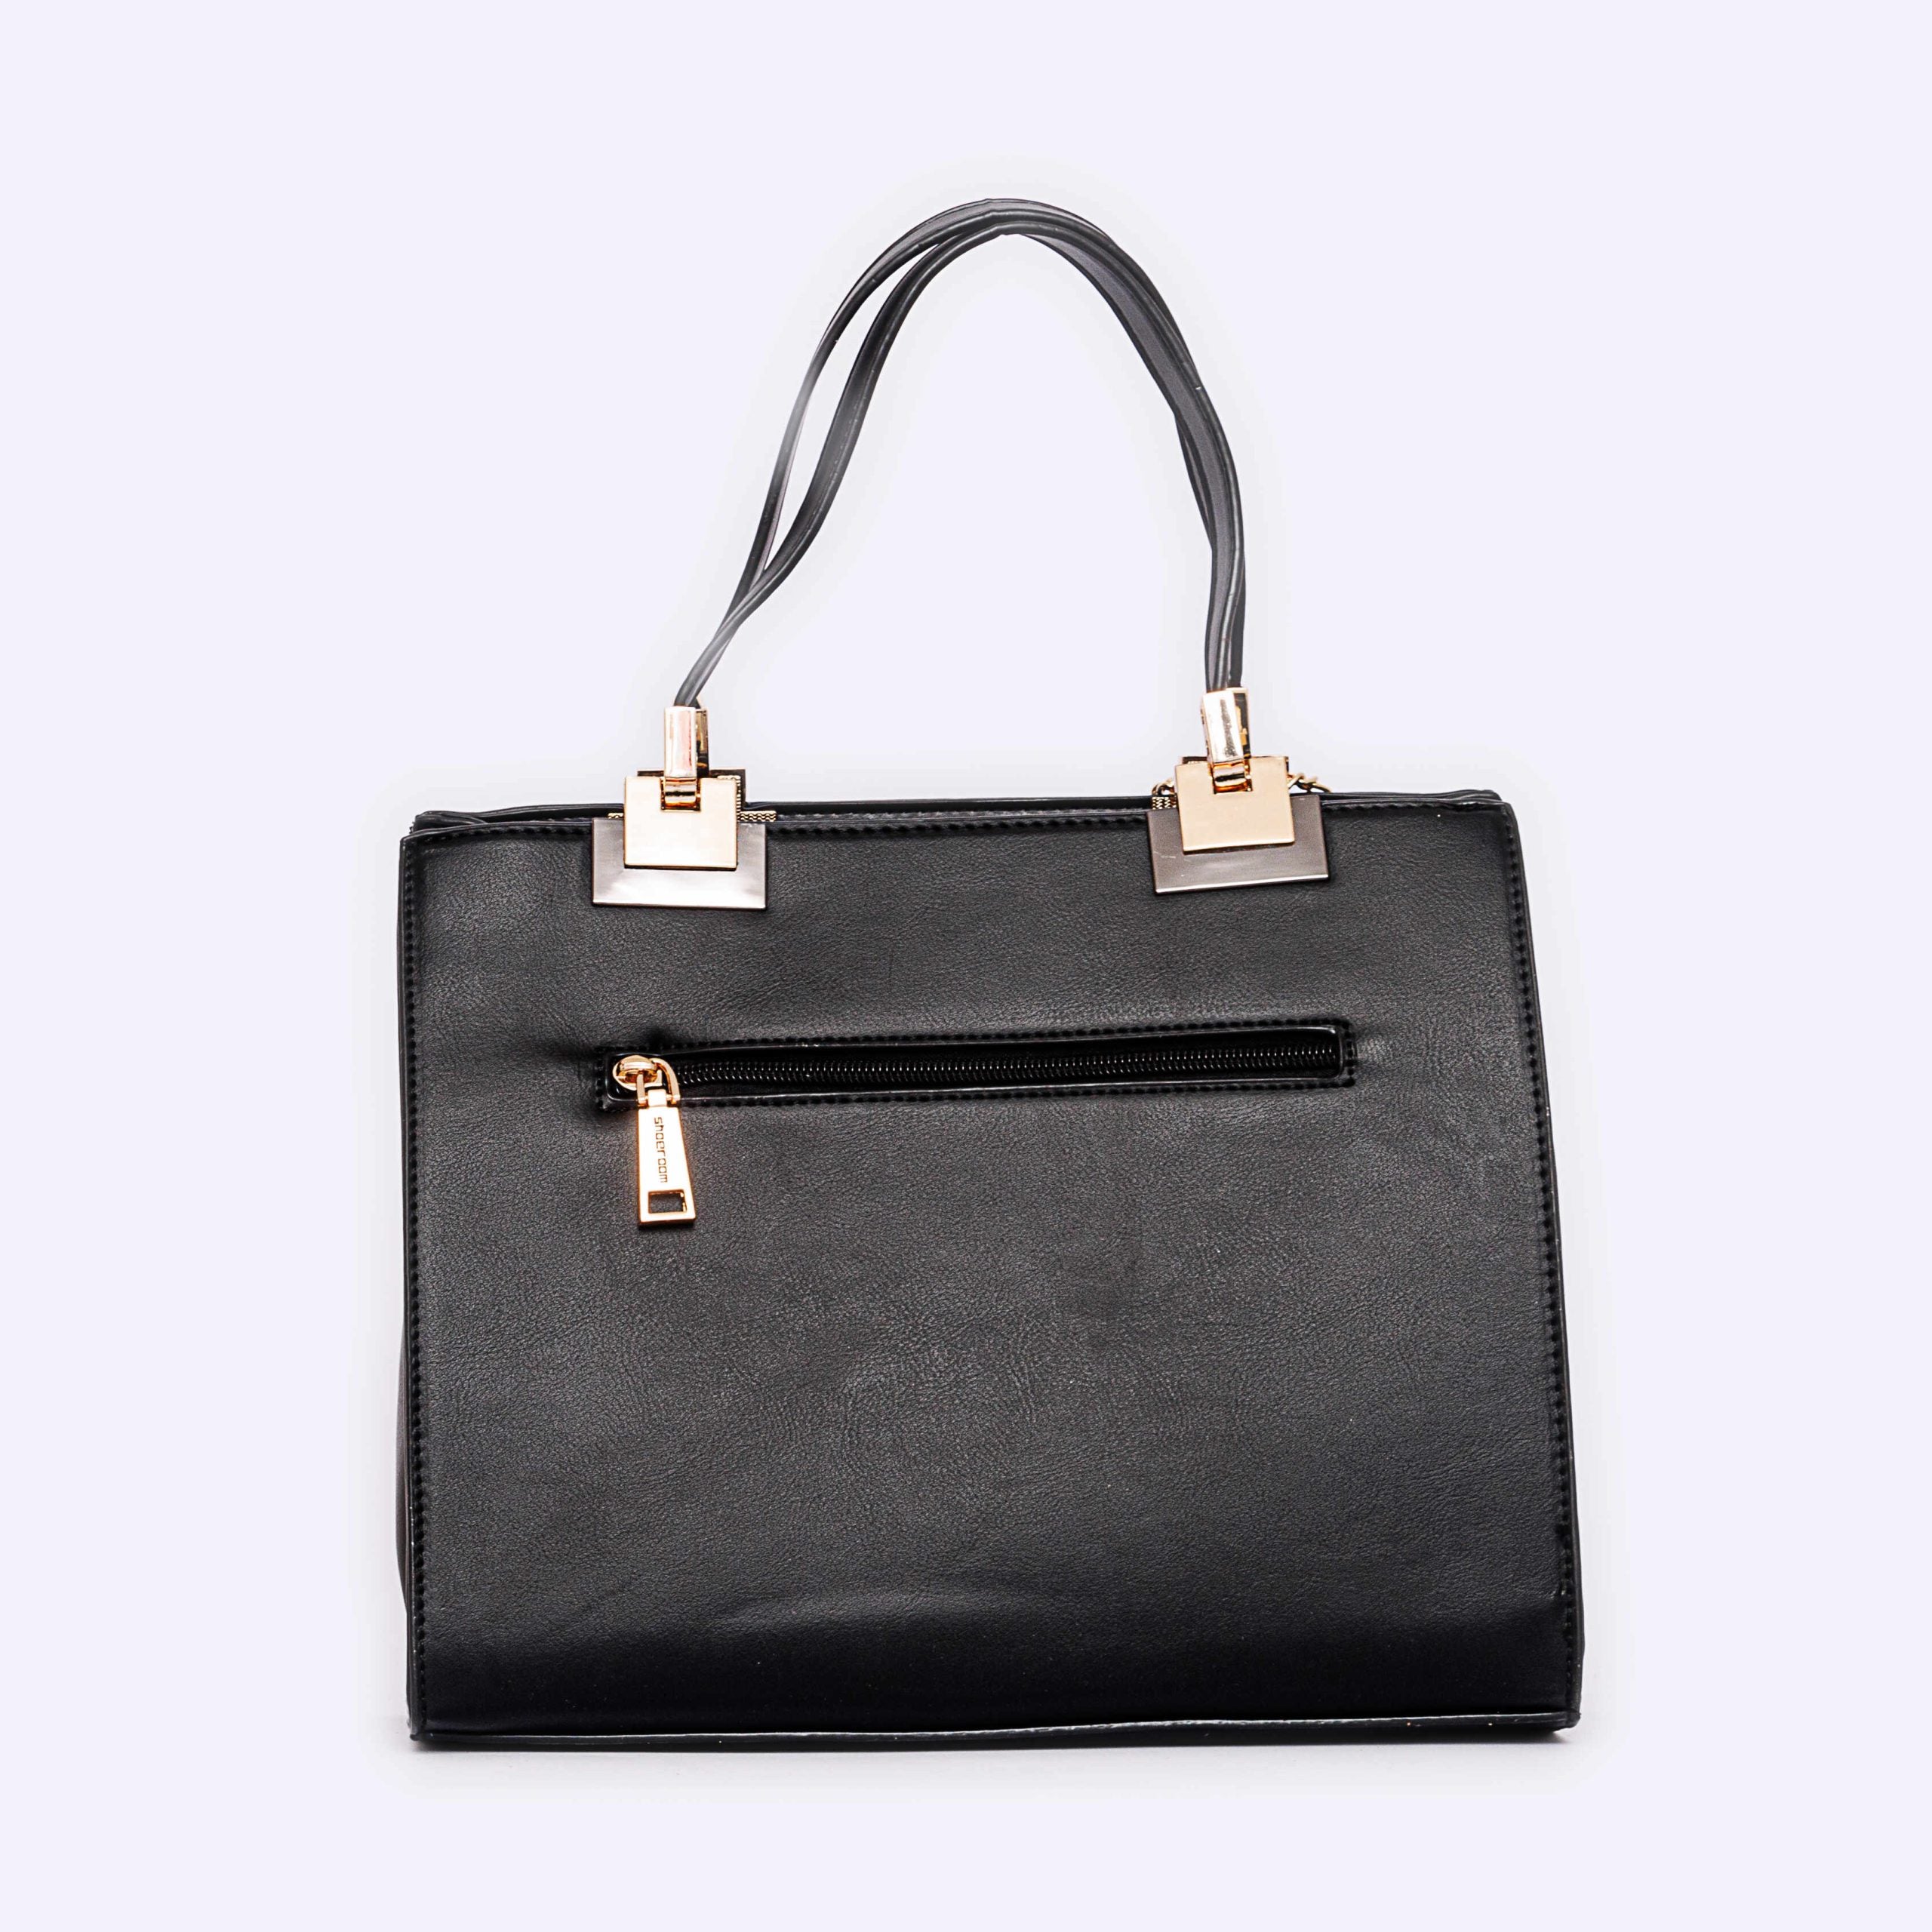 Shoeroom Woman Handbags B1254